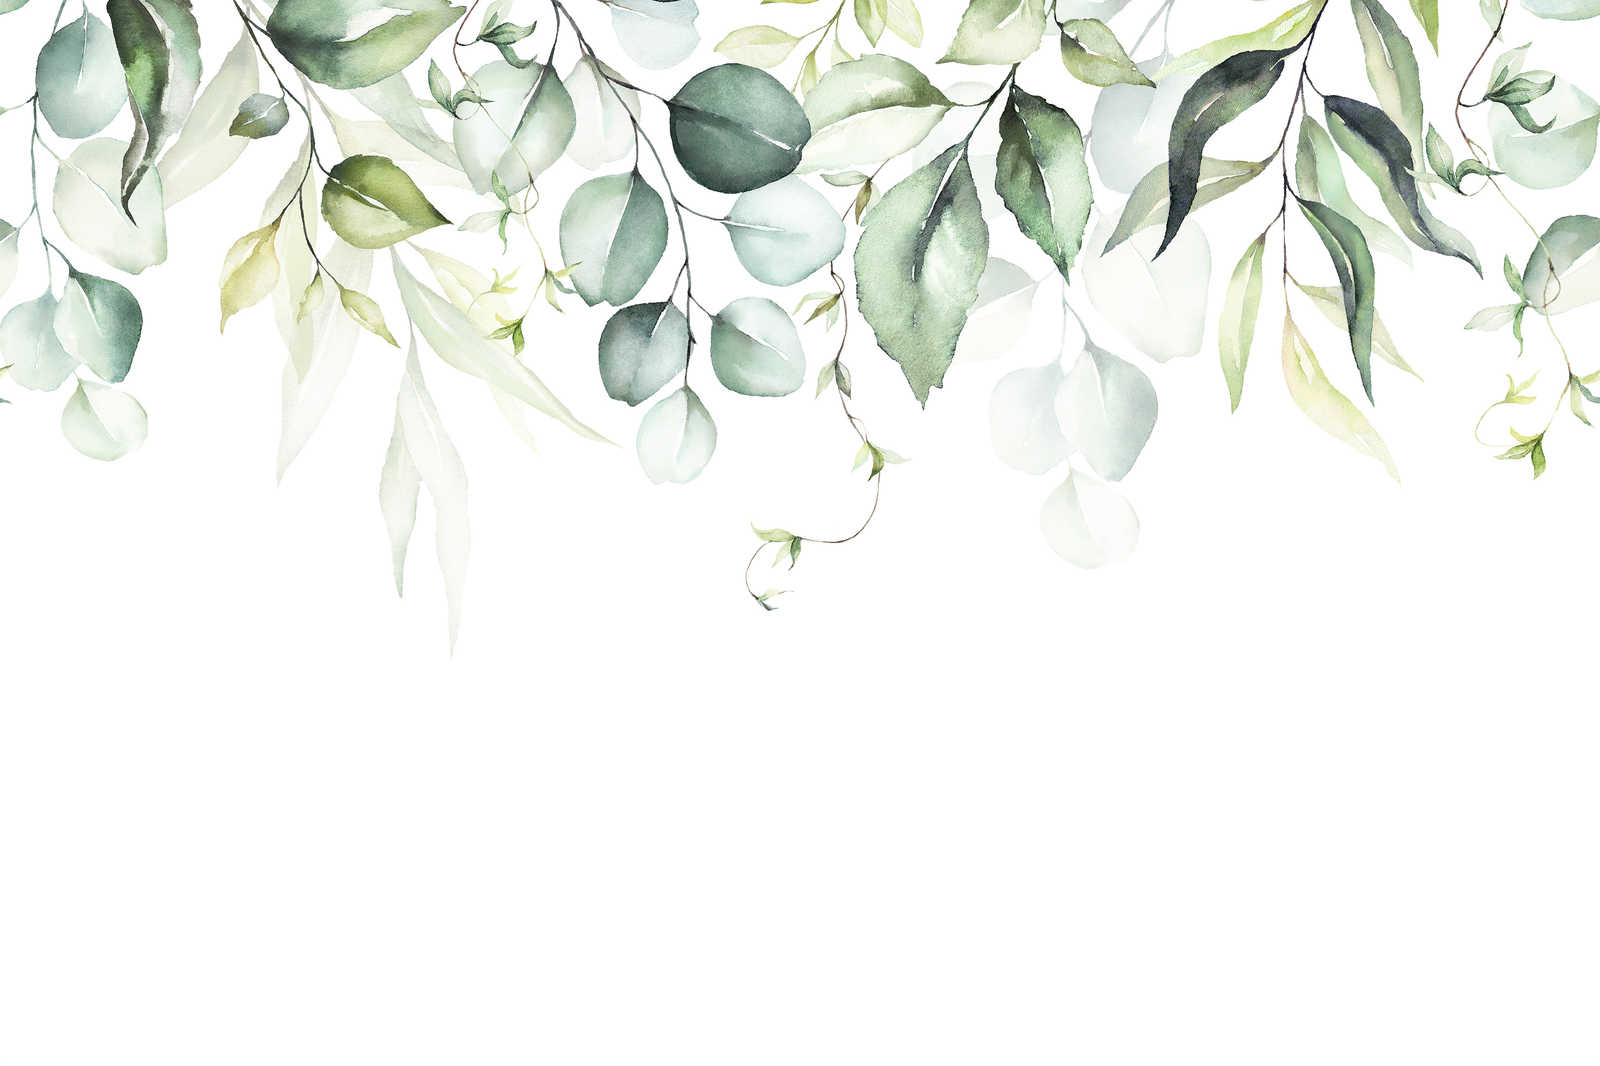             Leinwandbild mit Blätterranken im Wasserfarben-Look – 0,90 m x 0,60 m
        